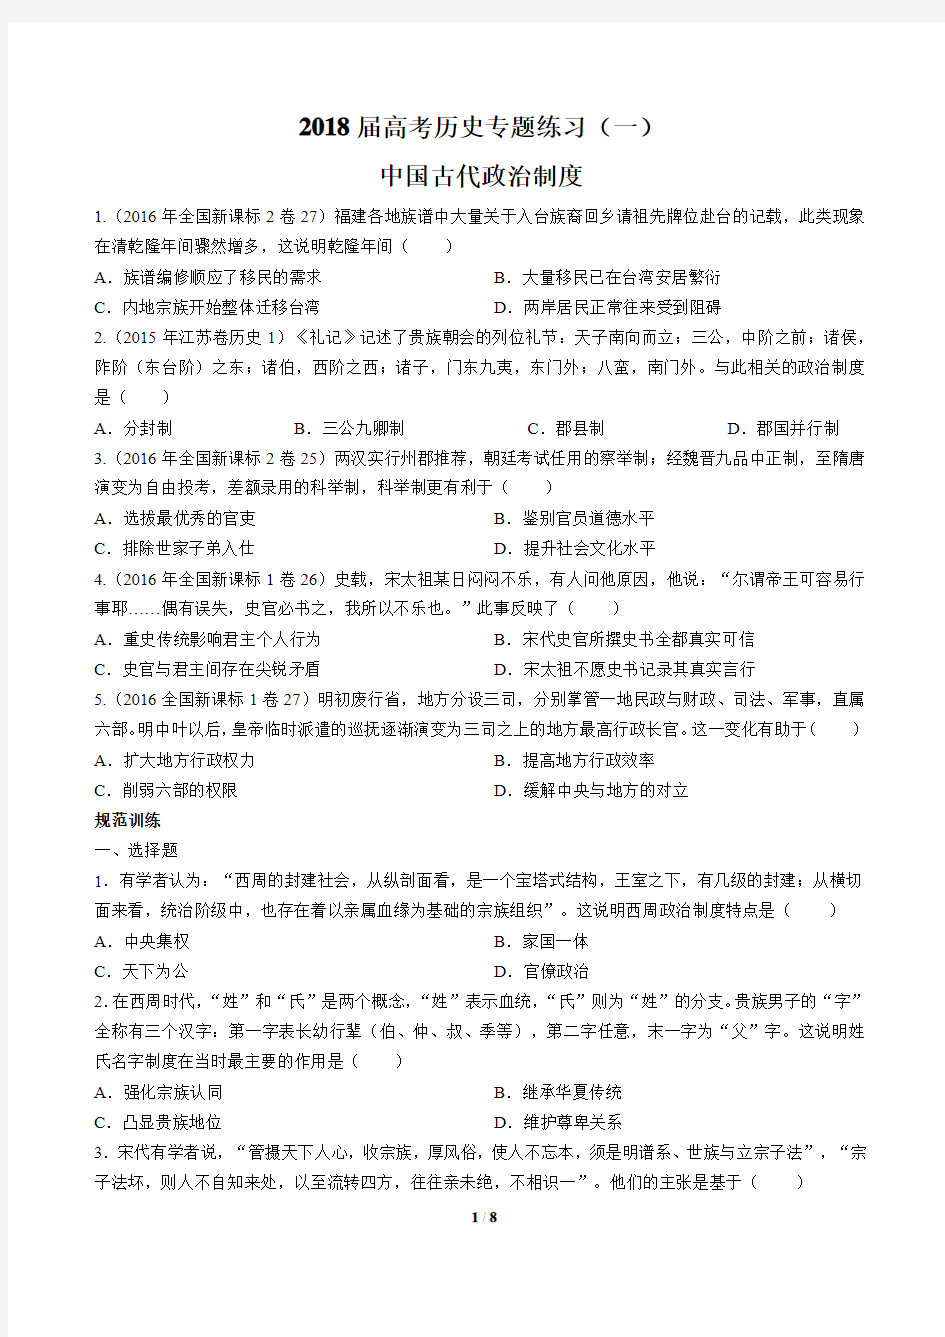 2018届高考历史-中国古代政治制度-专题练习(一)及答案解析